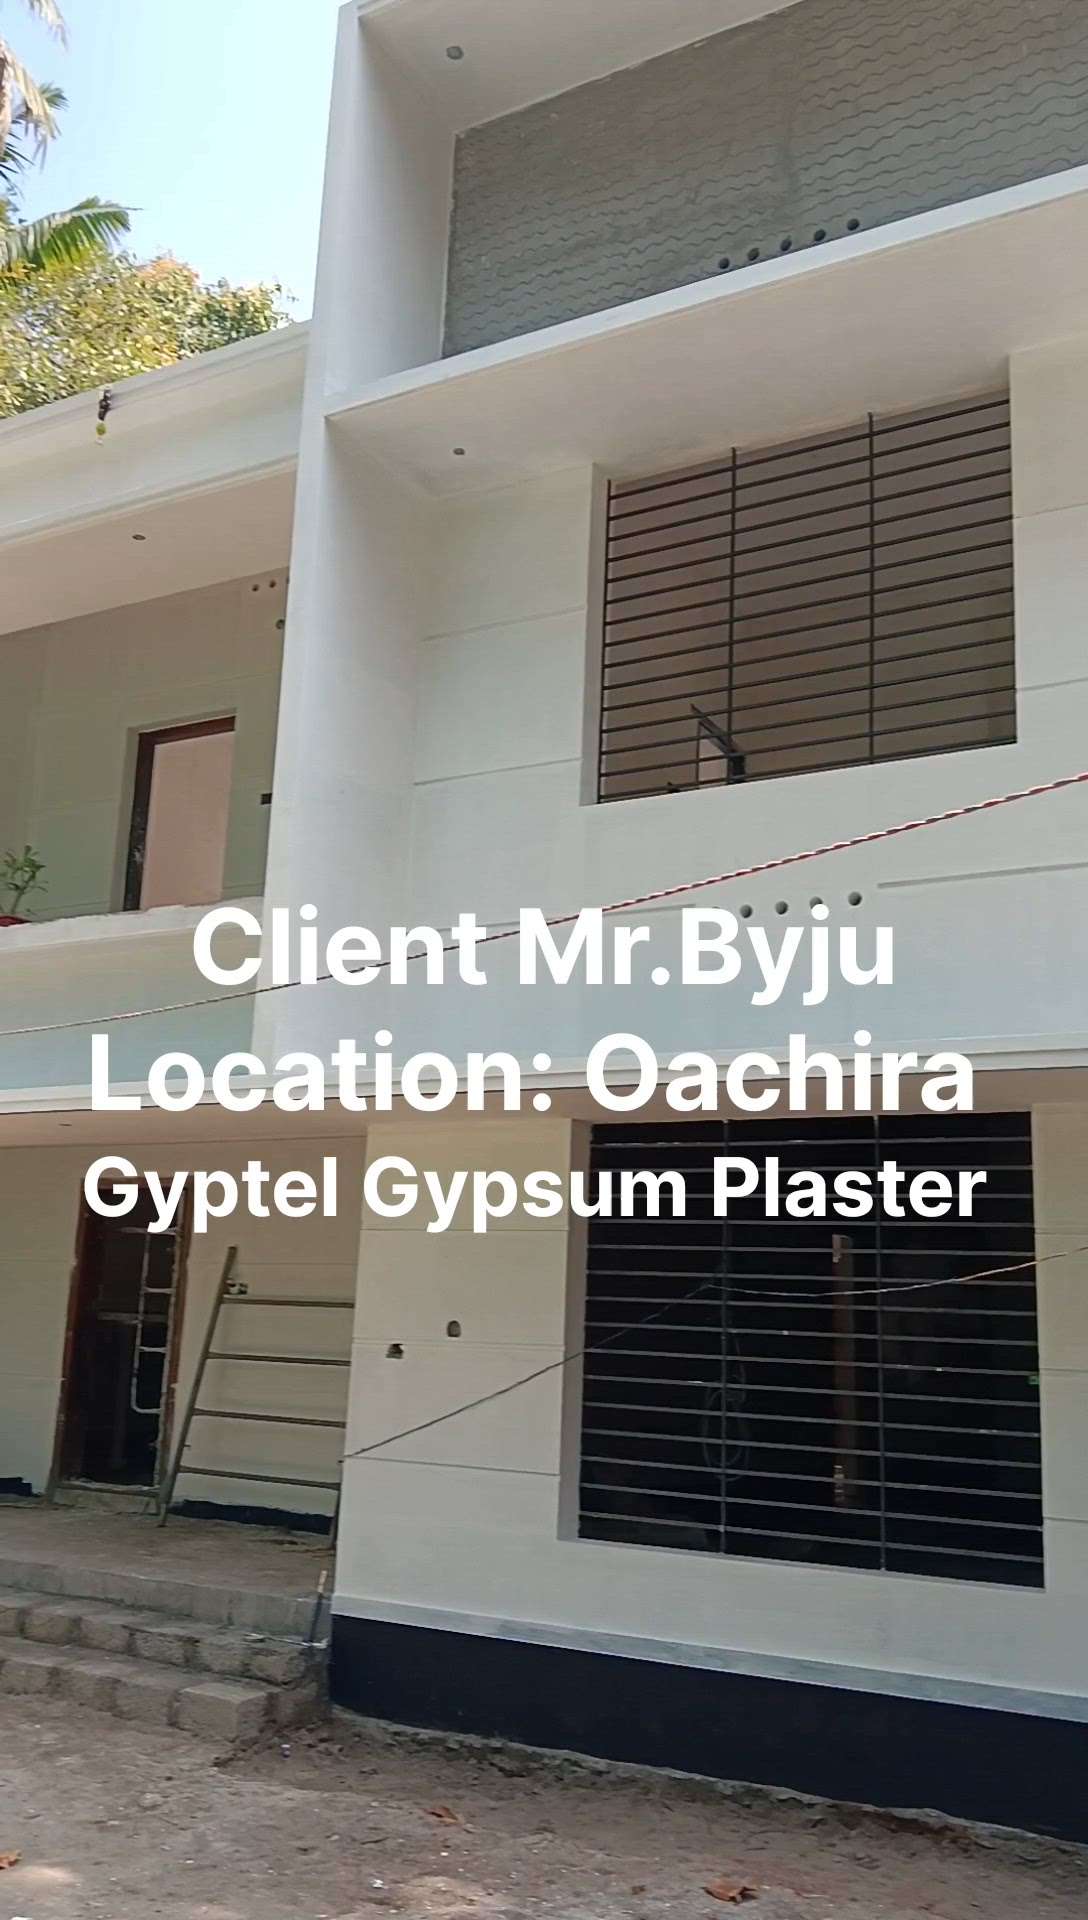 Client Mr: Byju
Location: Oachira #gypsumplaster  #gypsum